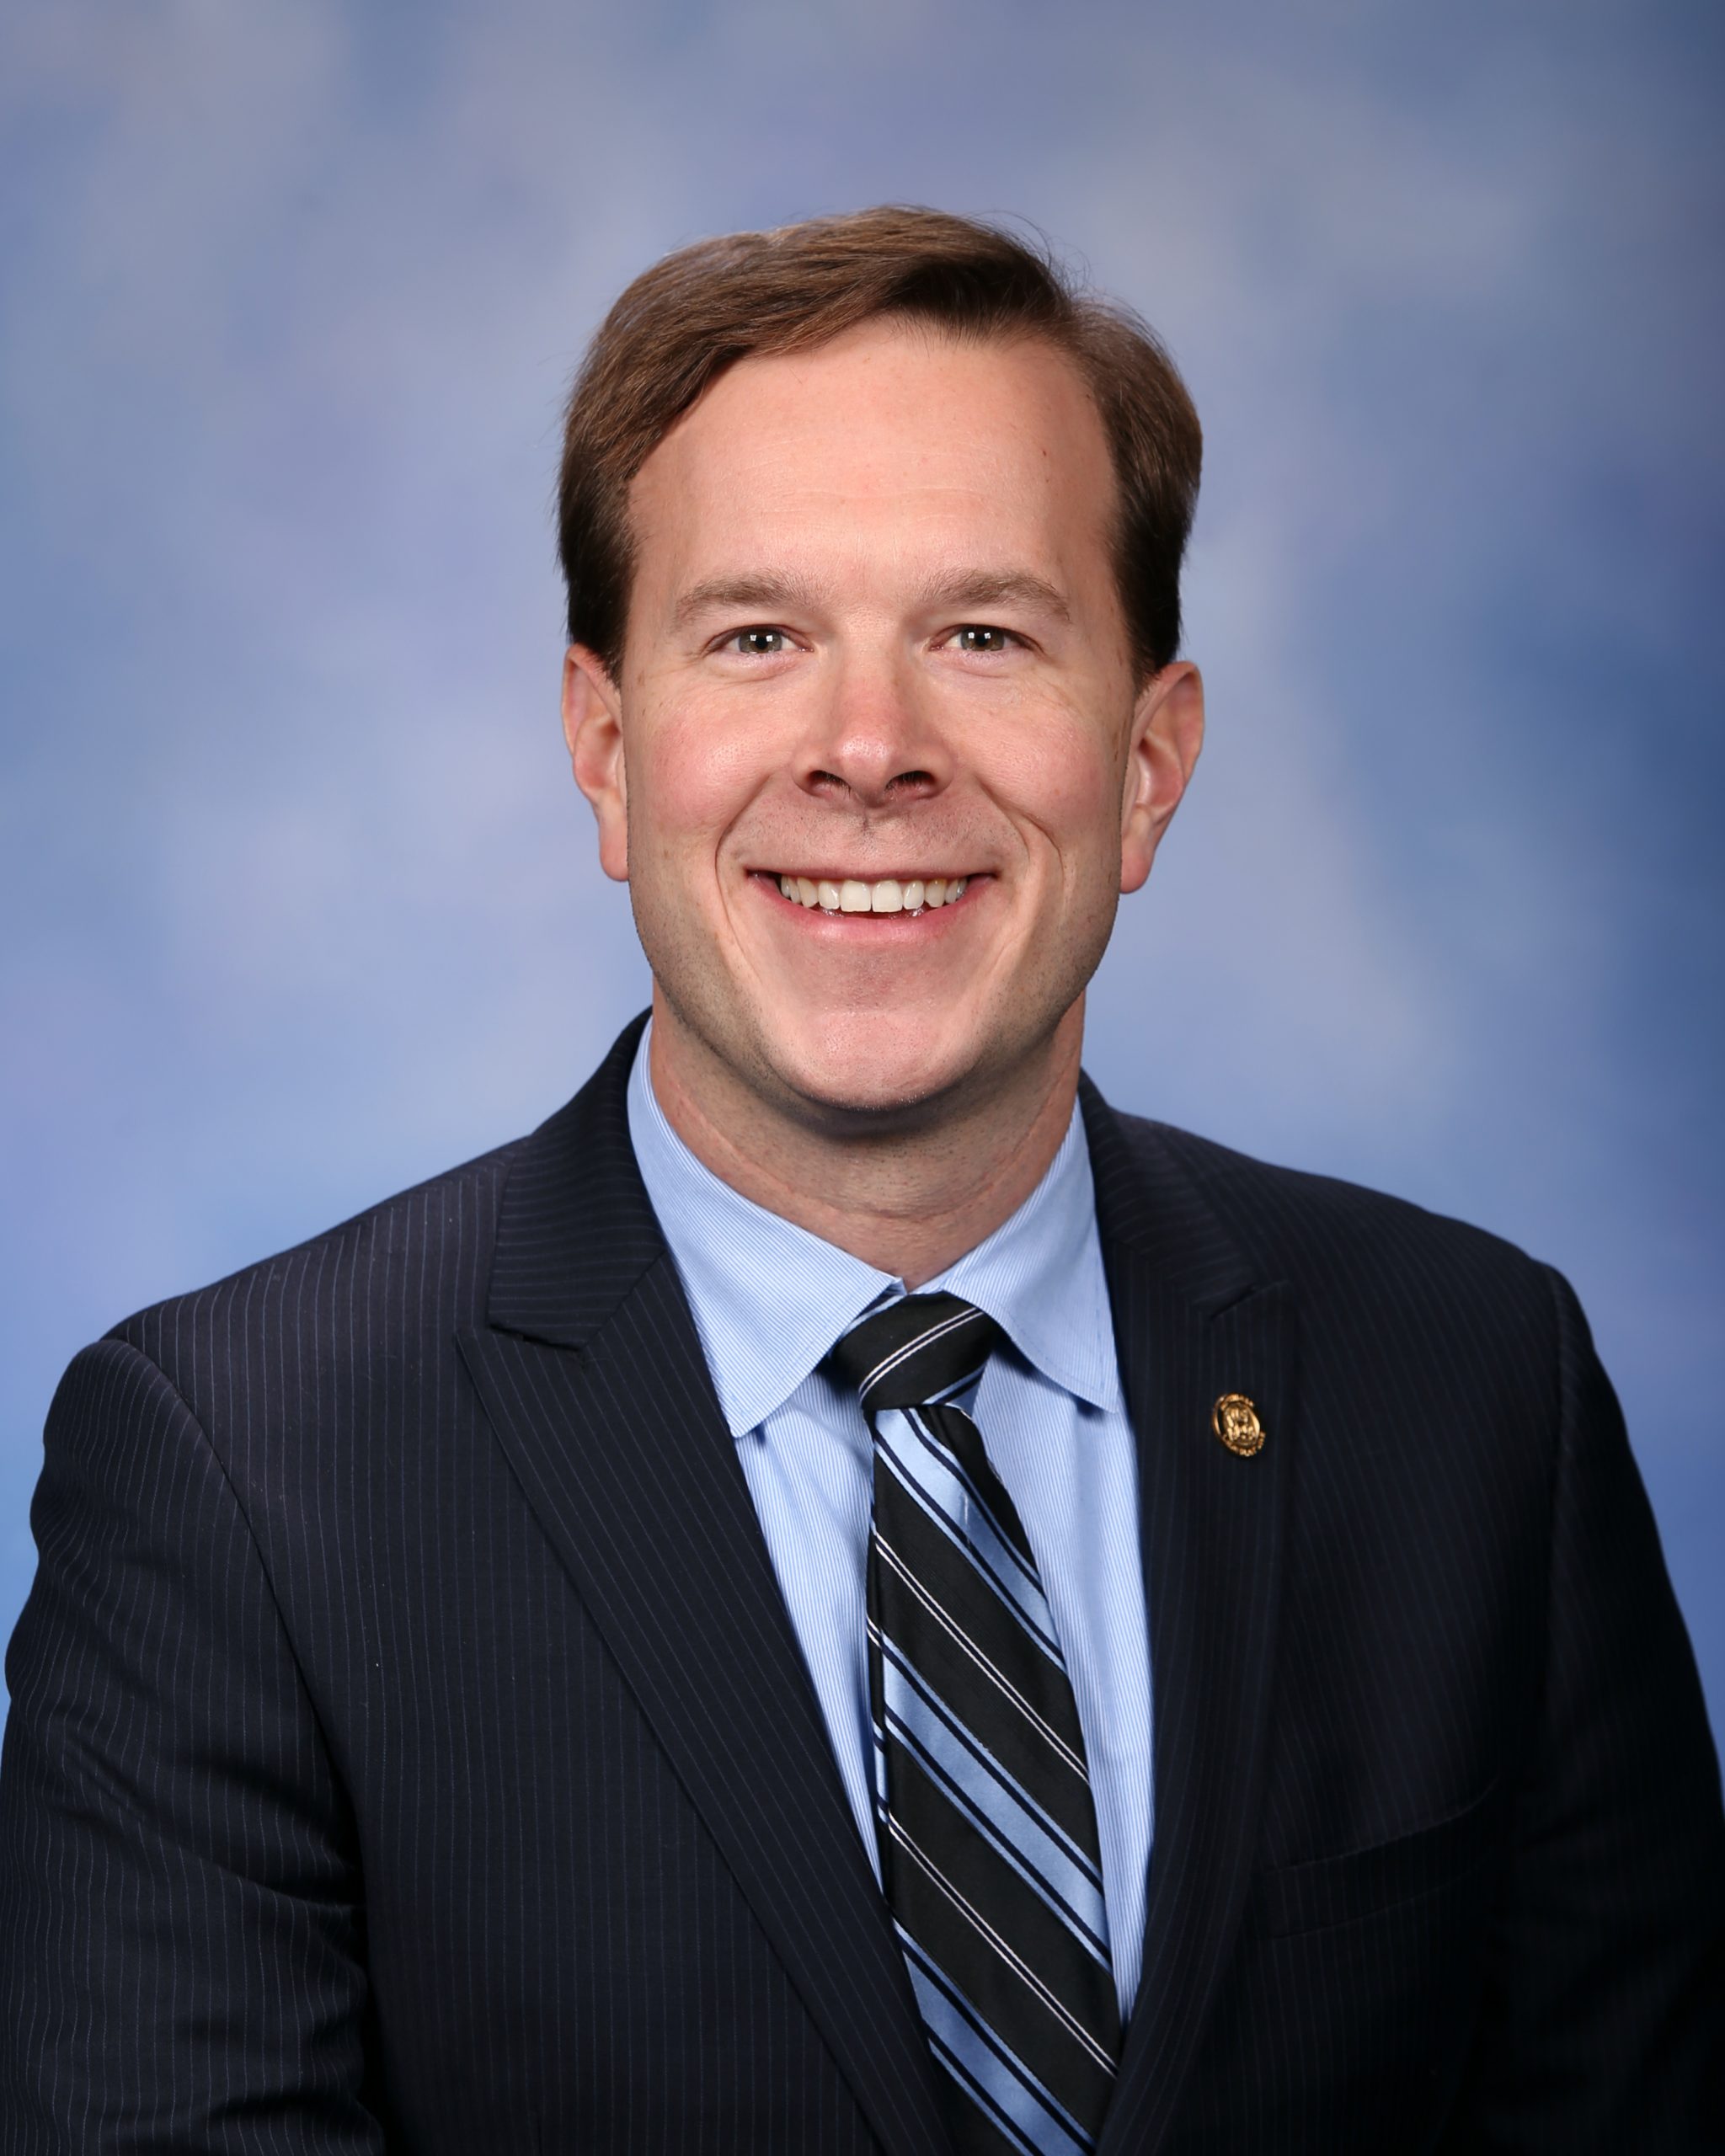  senator Matt Koleszar